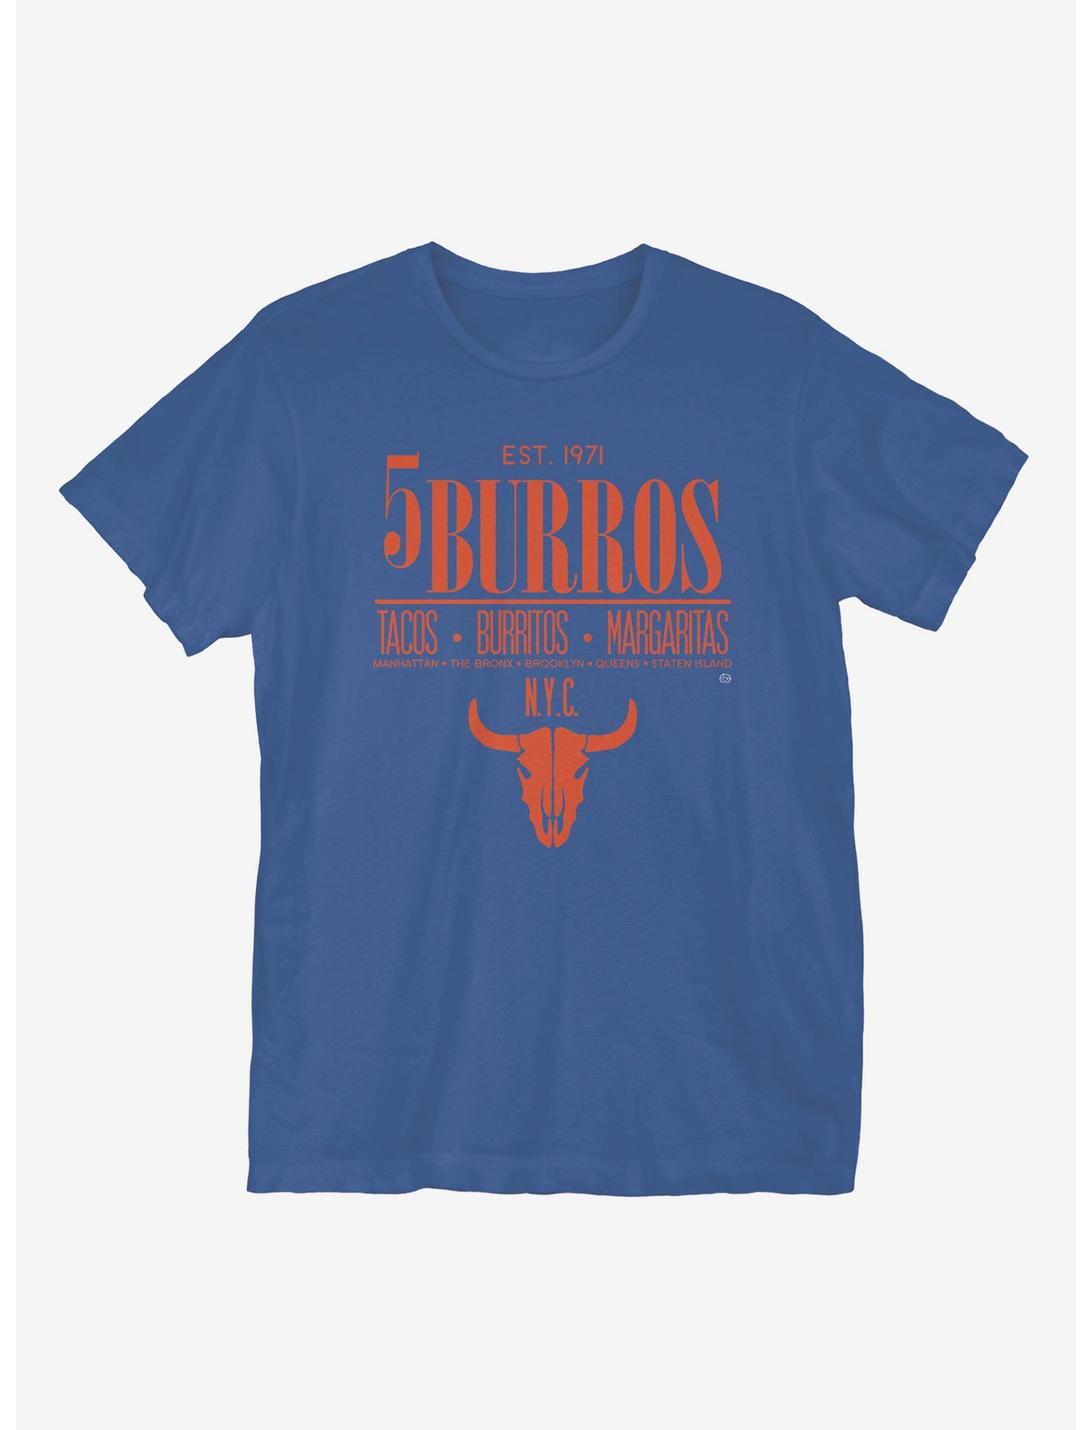 5Burros Tacos T-Shirt, ROYAL BLUE, hi-res